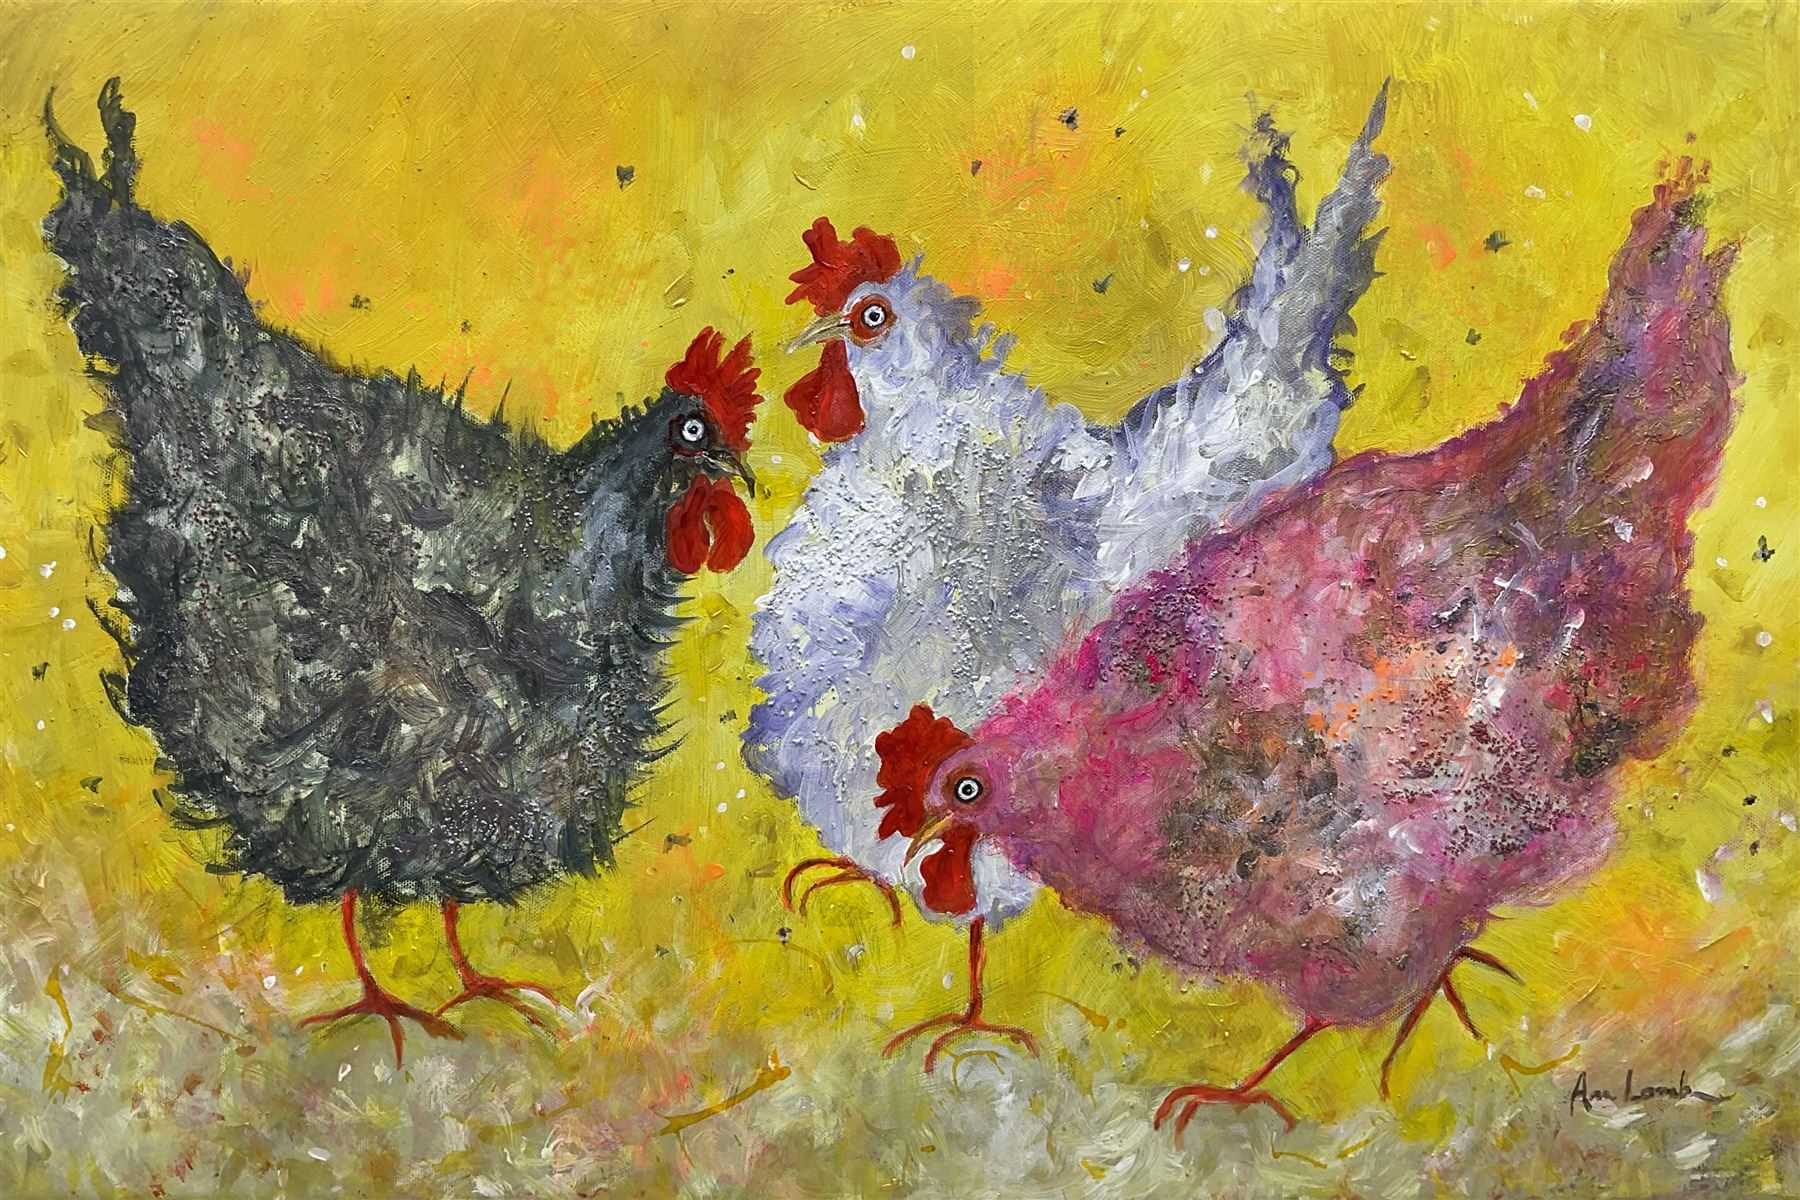 Ann Lamb (British 1955-): 'Three French Hens'